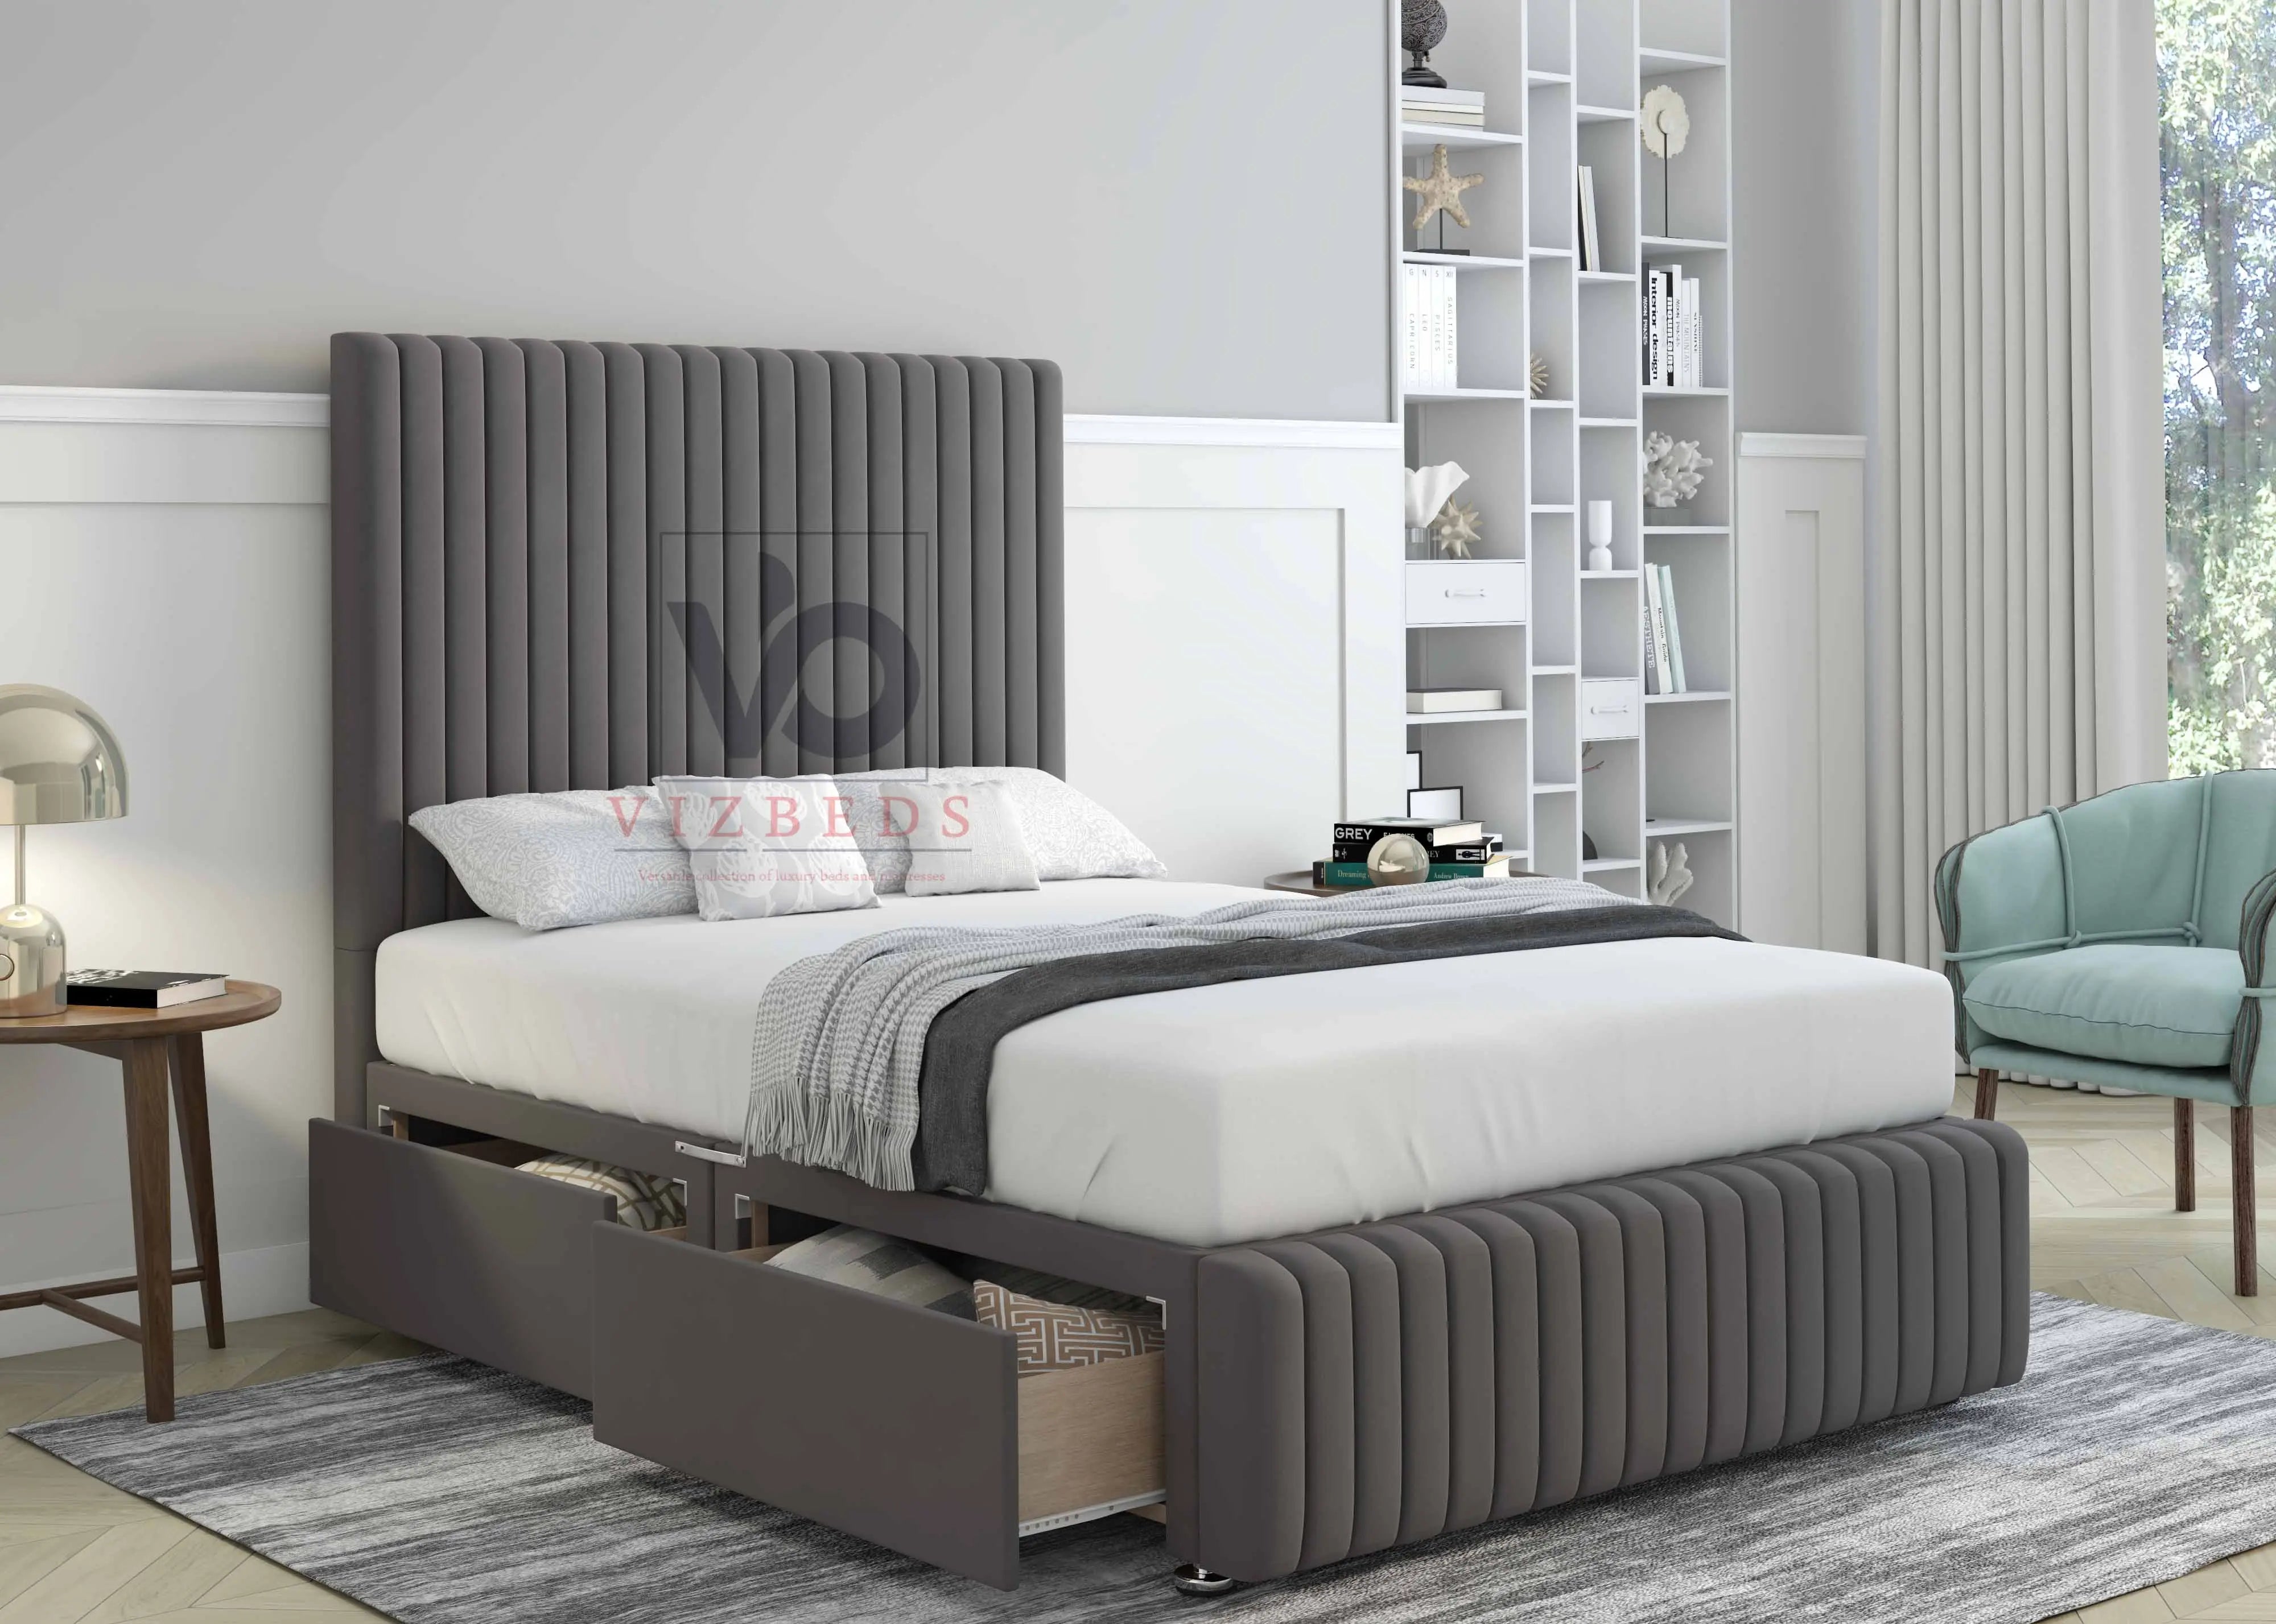 Alexis Designer Divan Bed Set With Luxury Headboard